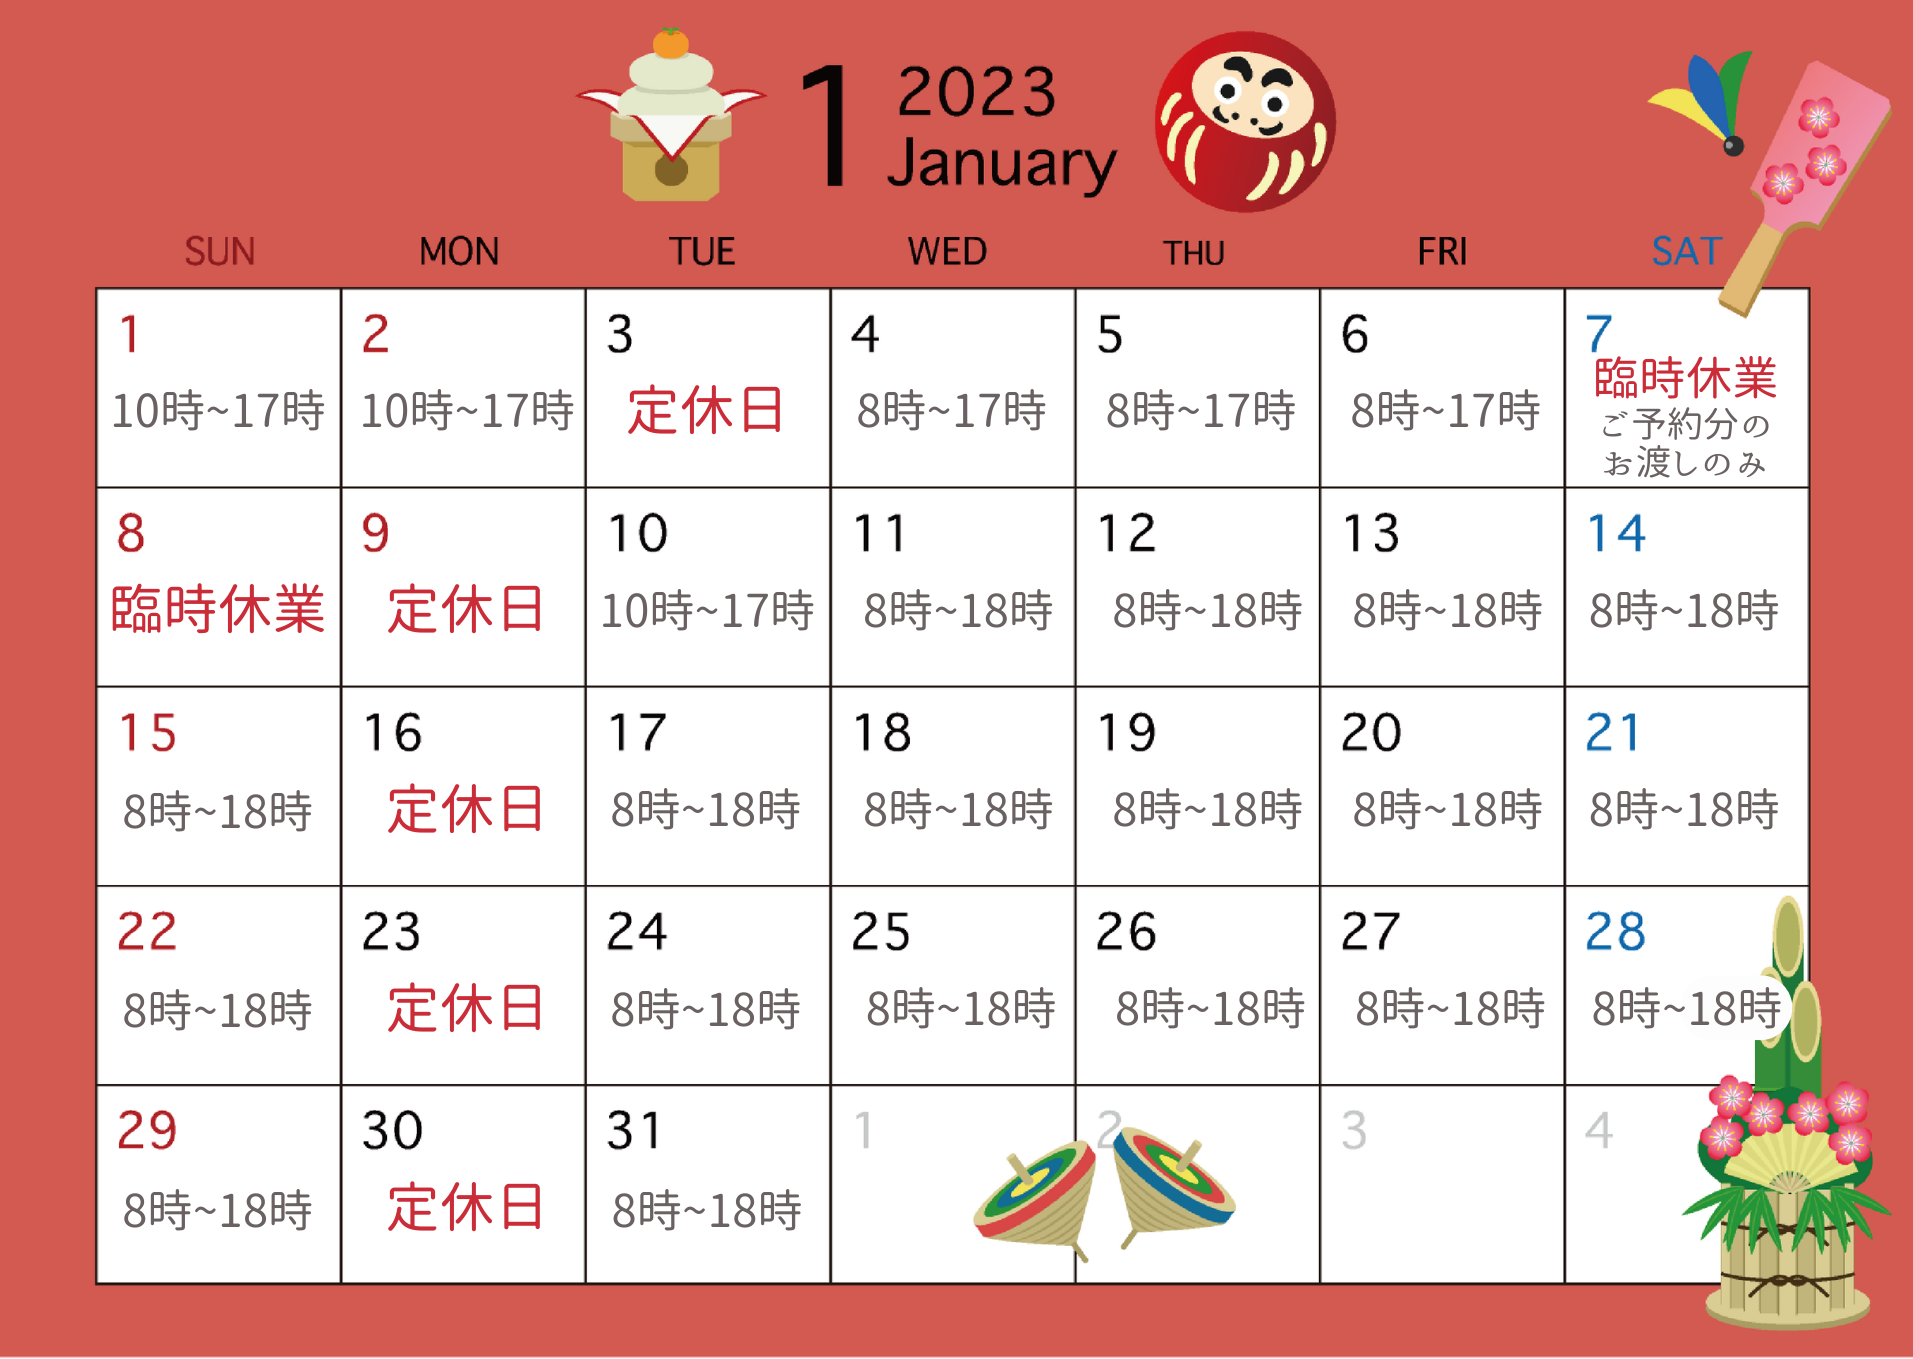 1月のカレンダーを更新しました。